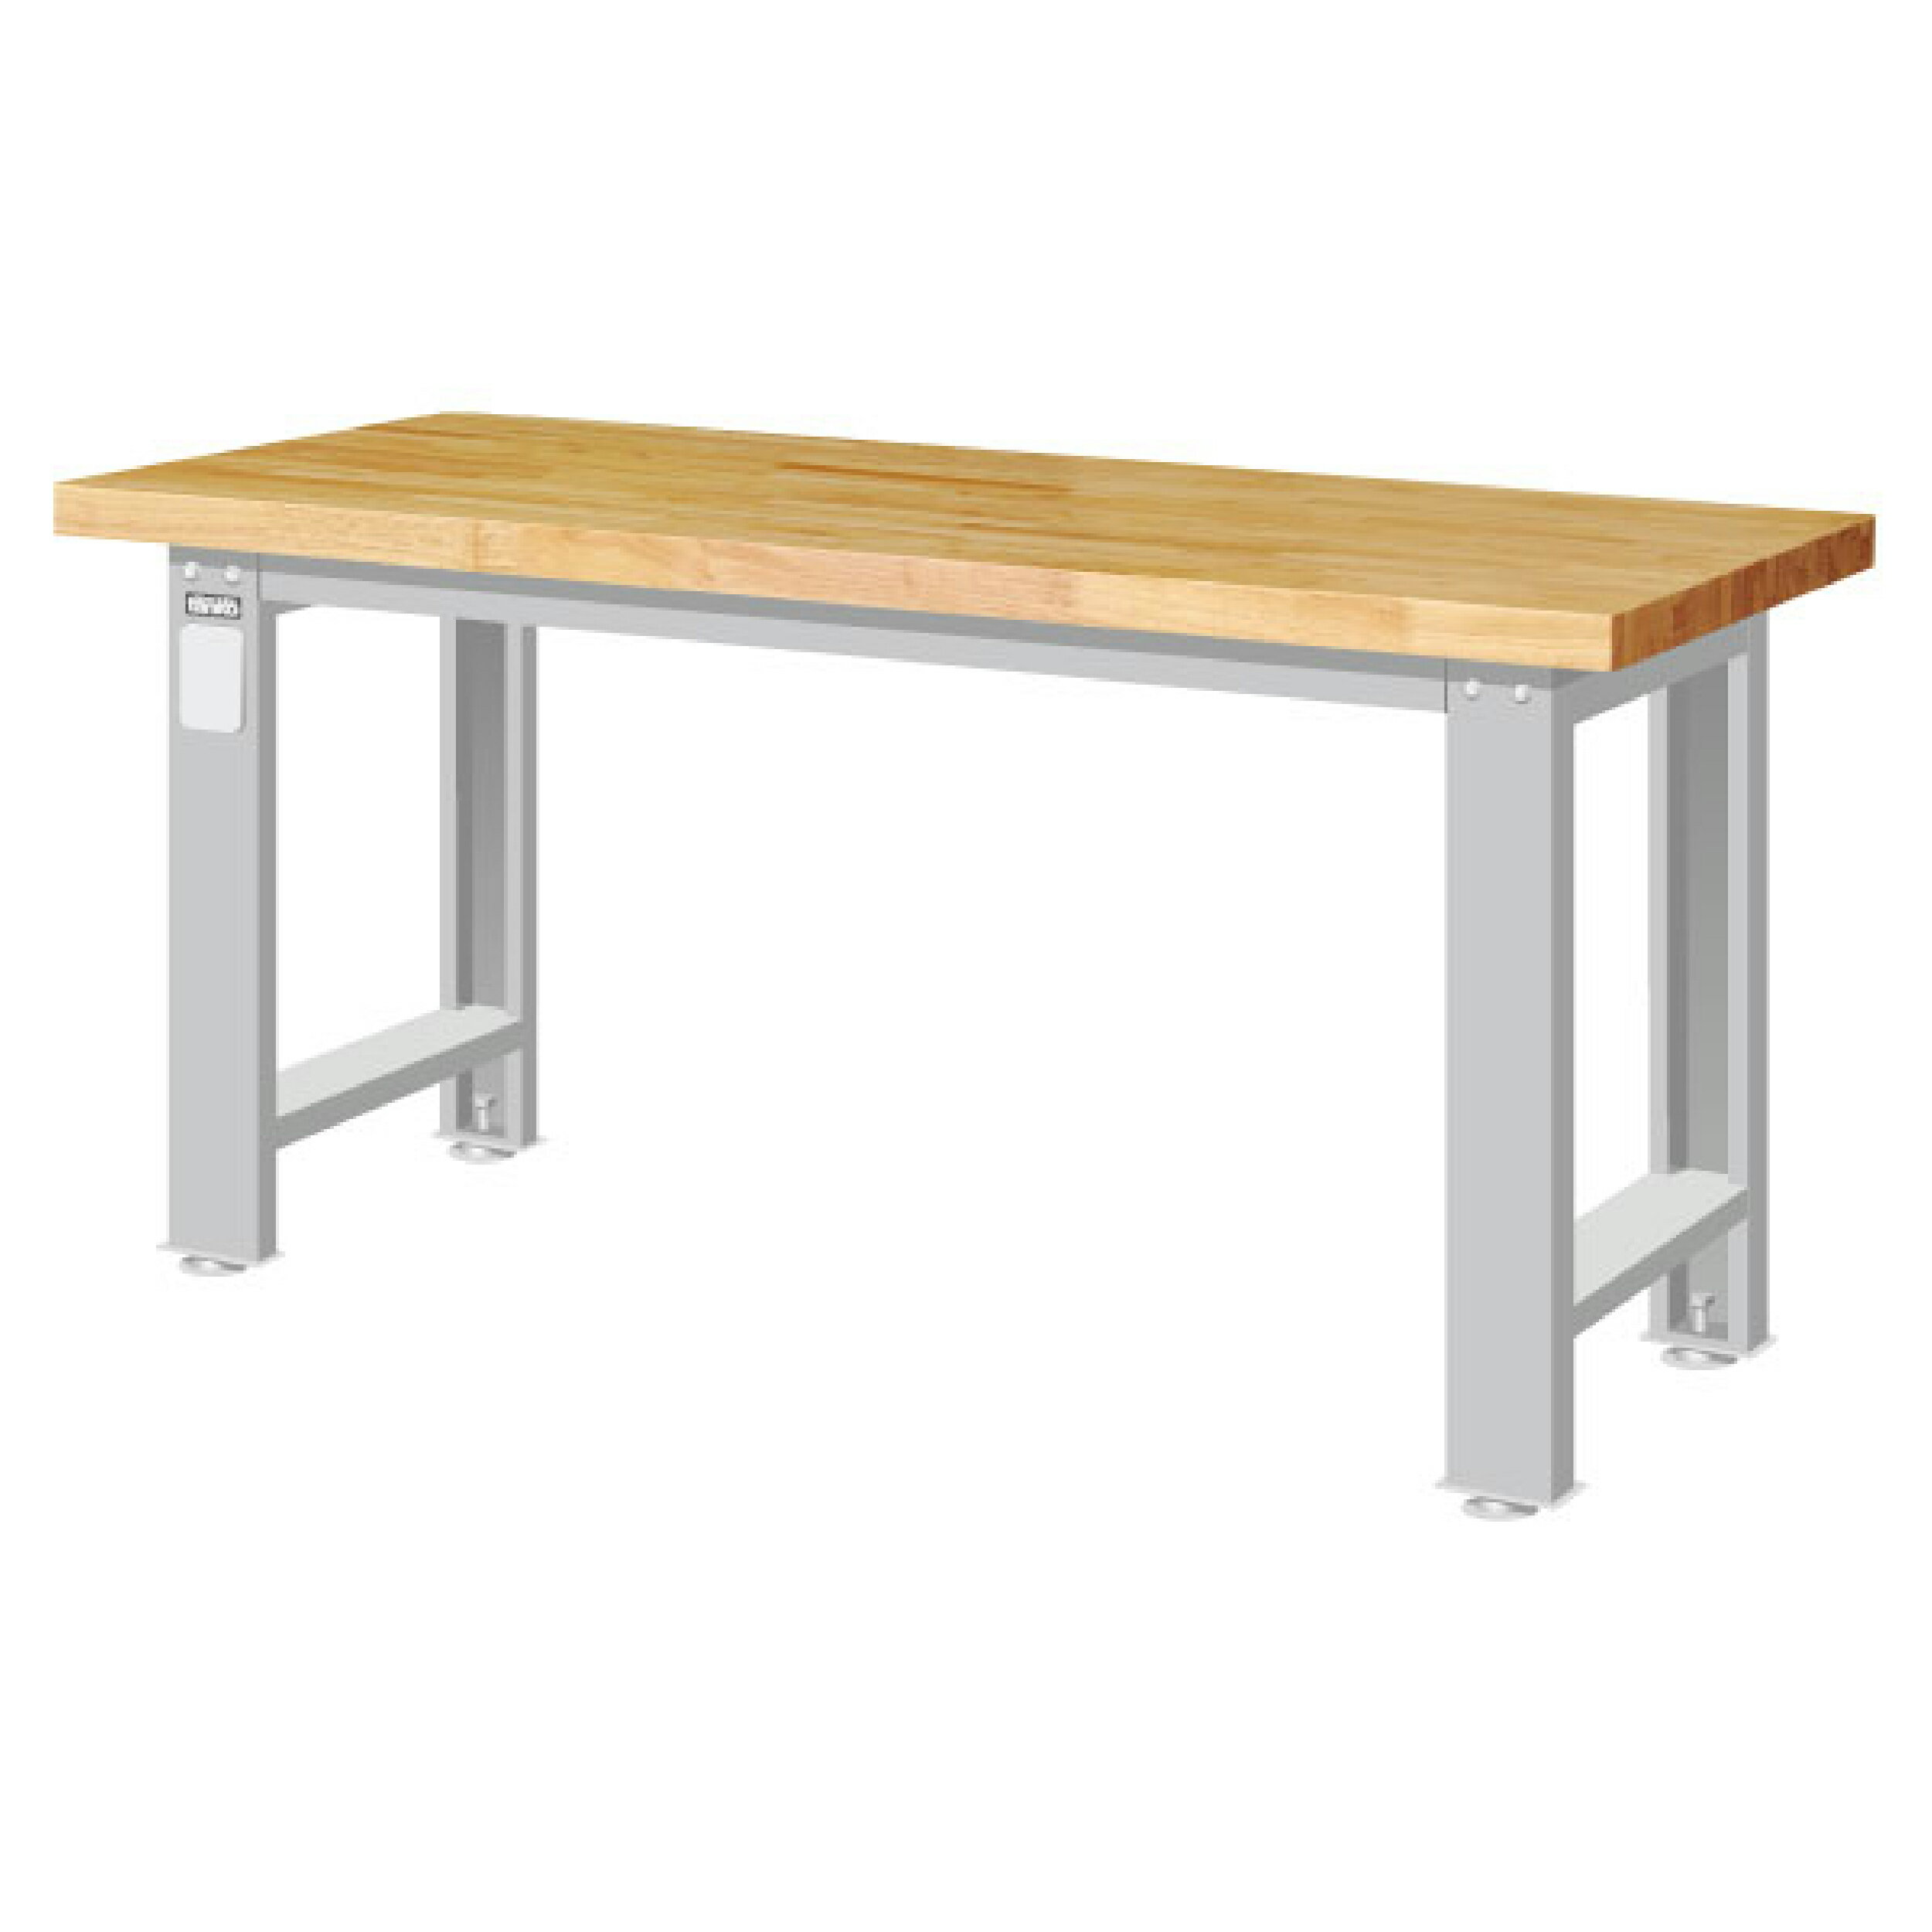 TANKO 重量型工作桌 原木桌板 WA-57W (一般型)